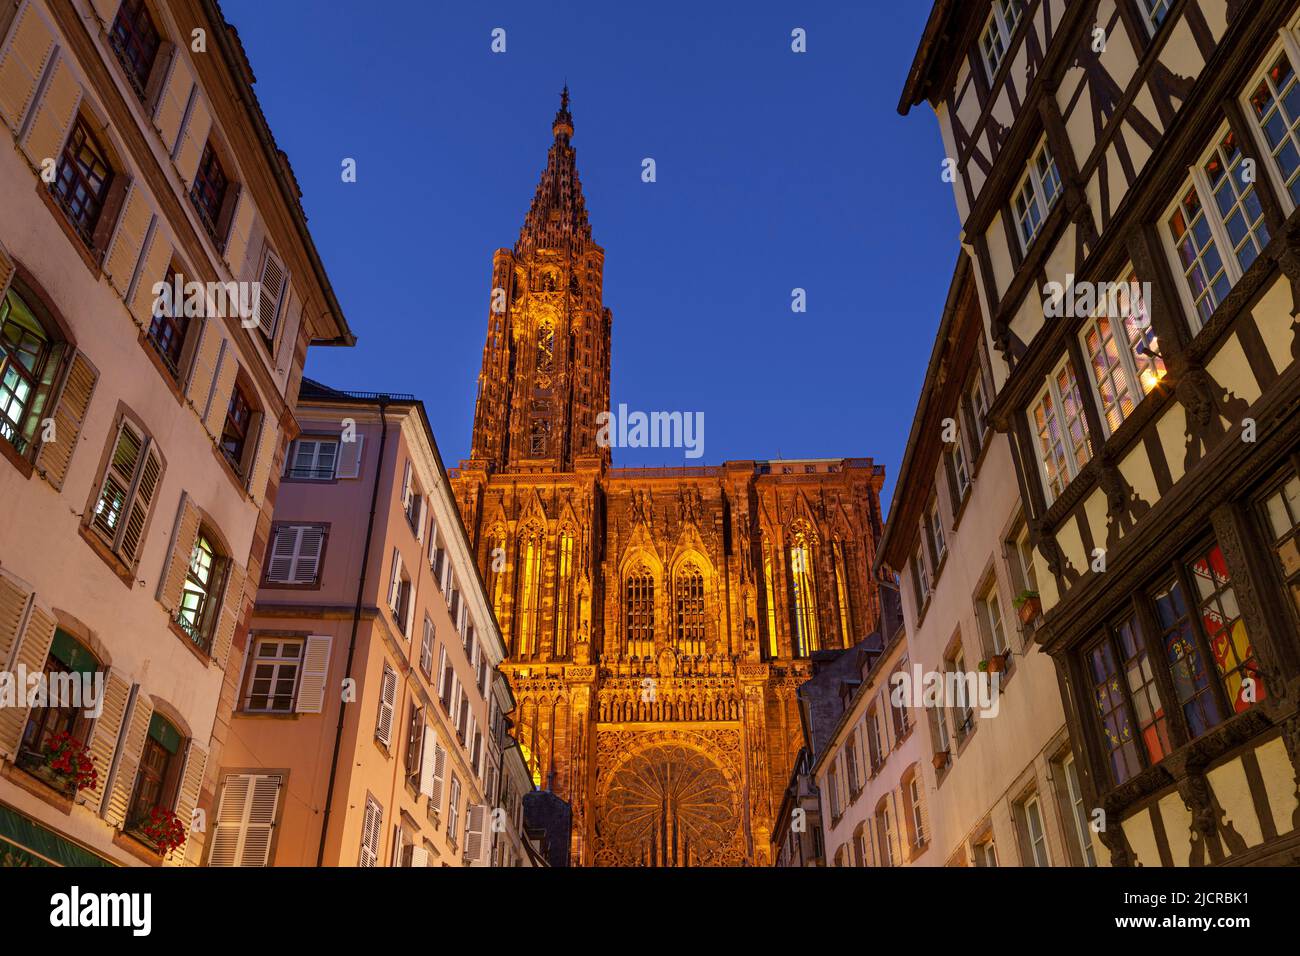 Der prunkvolle Straßburger Dom überragt die Gebäude in Straßburg, Elsass, Frankreich Stockfoto